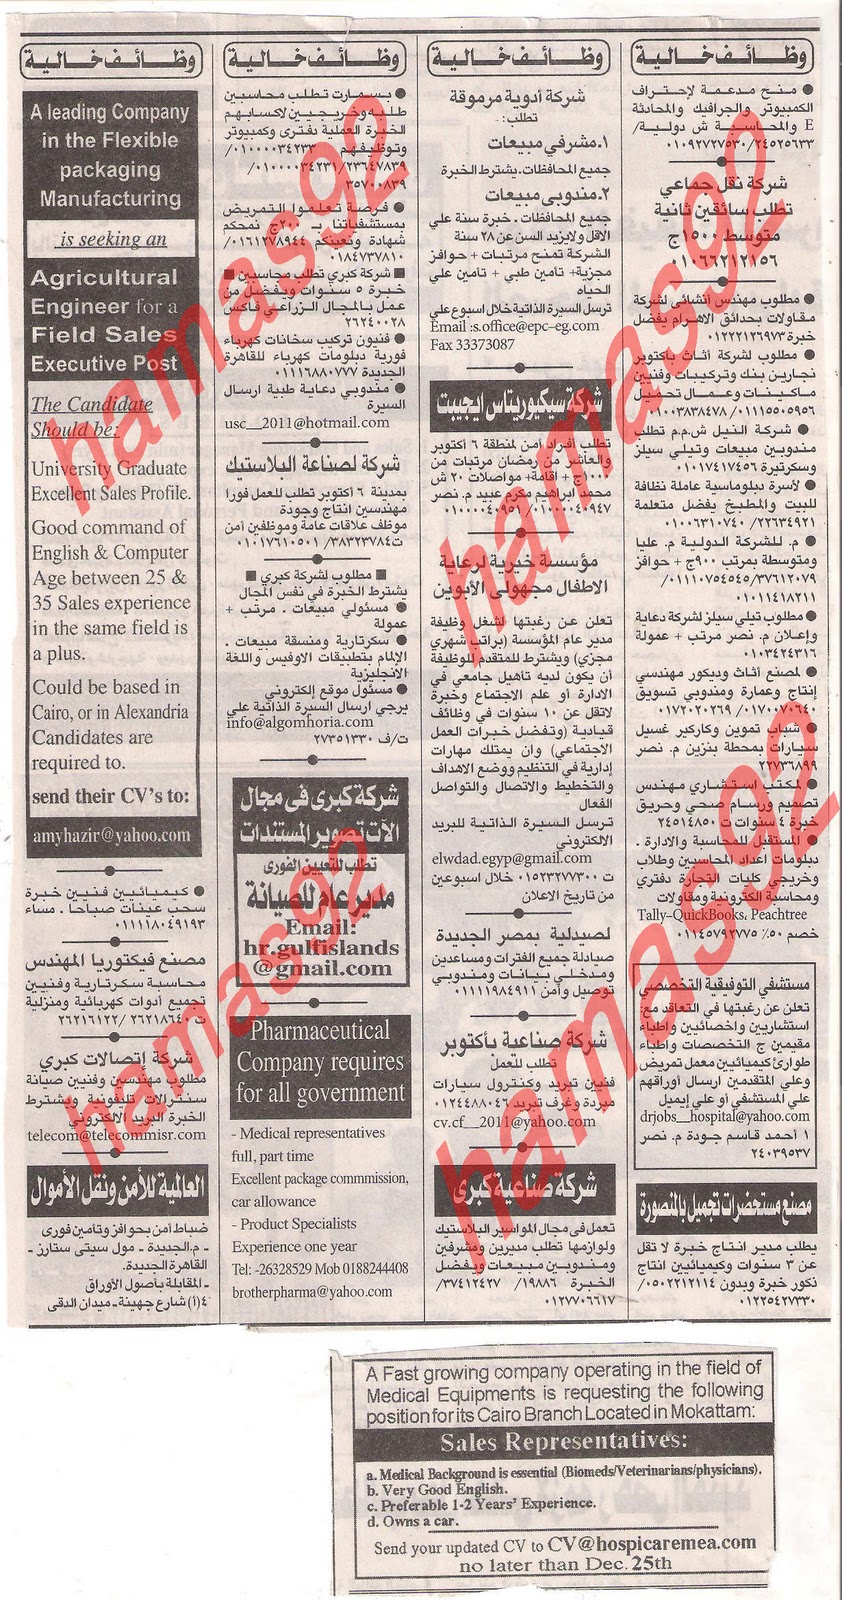 وظائف جريدة الاهرام الجمعة 9  ديسمبر 2011 , الجزء الاول , وظائف اهرام الجمعة 9\12\2011 Picture+007